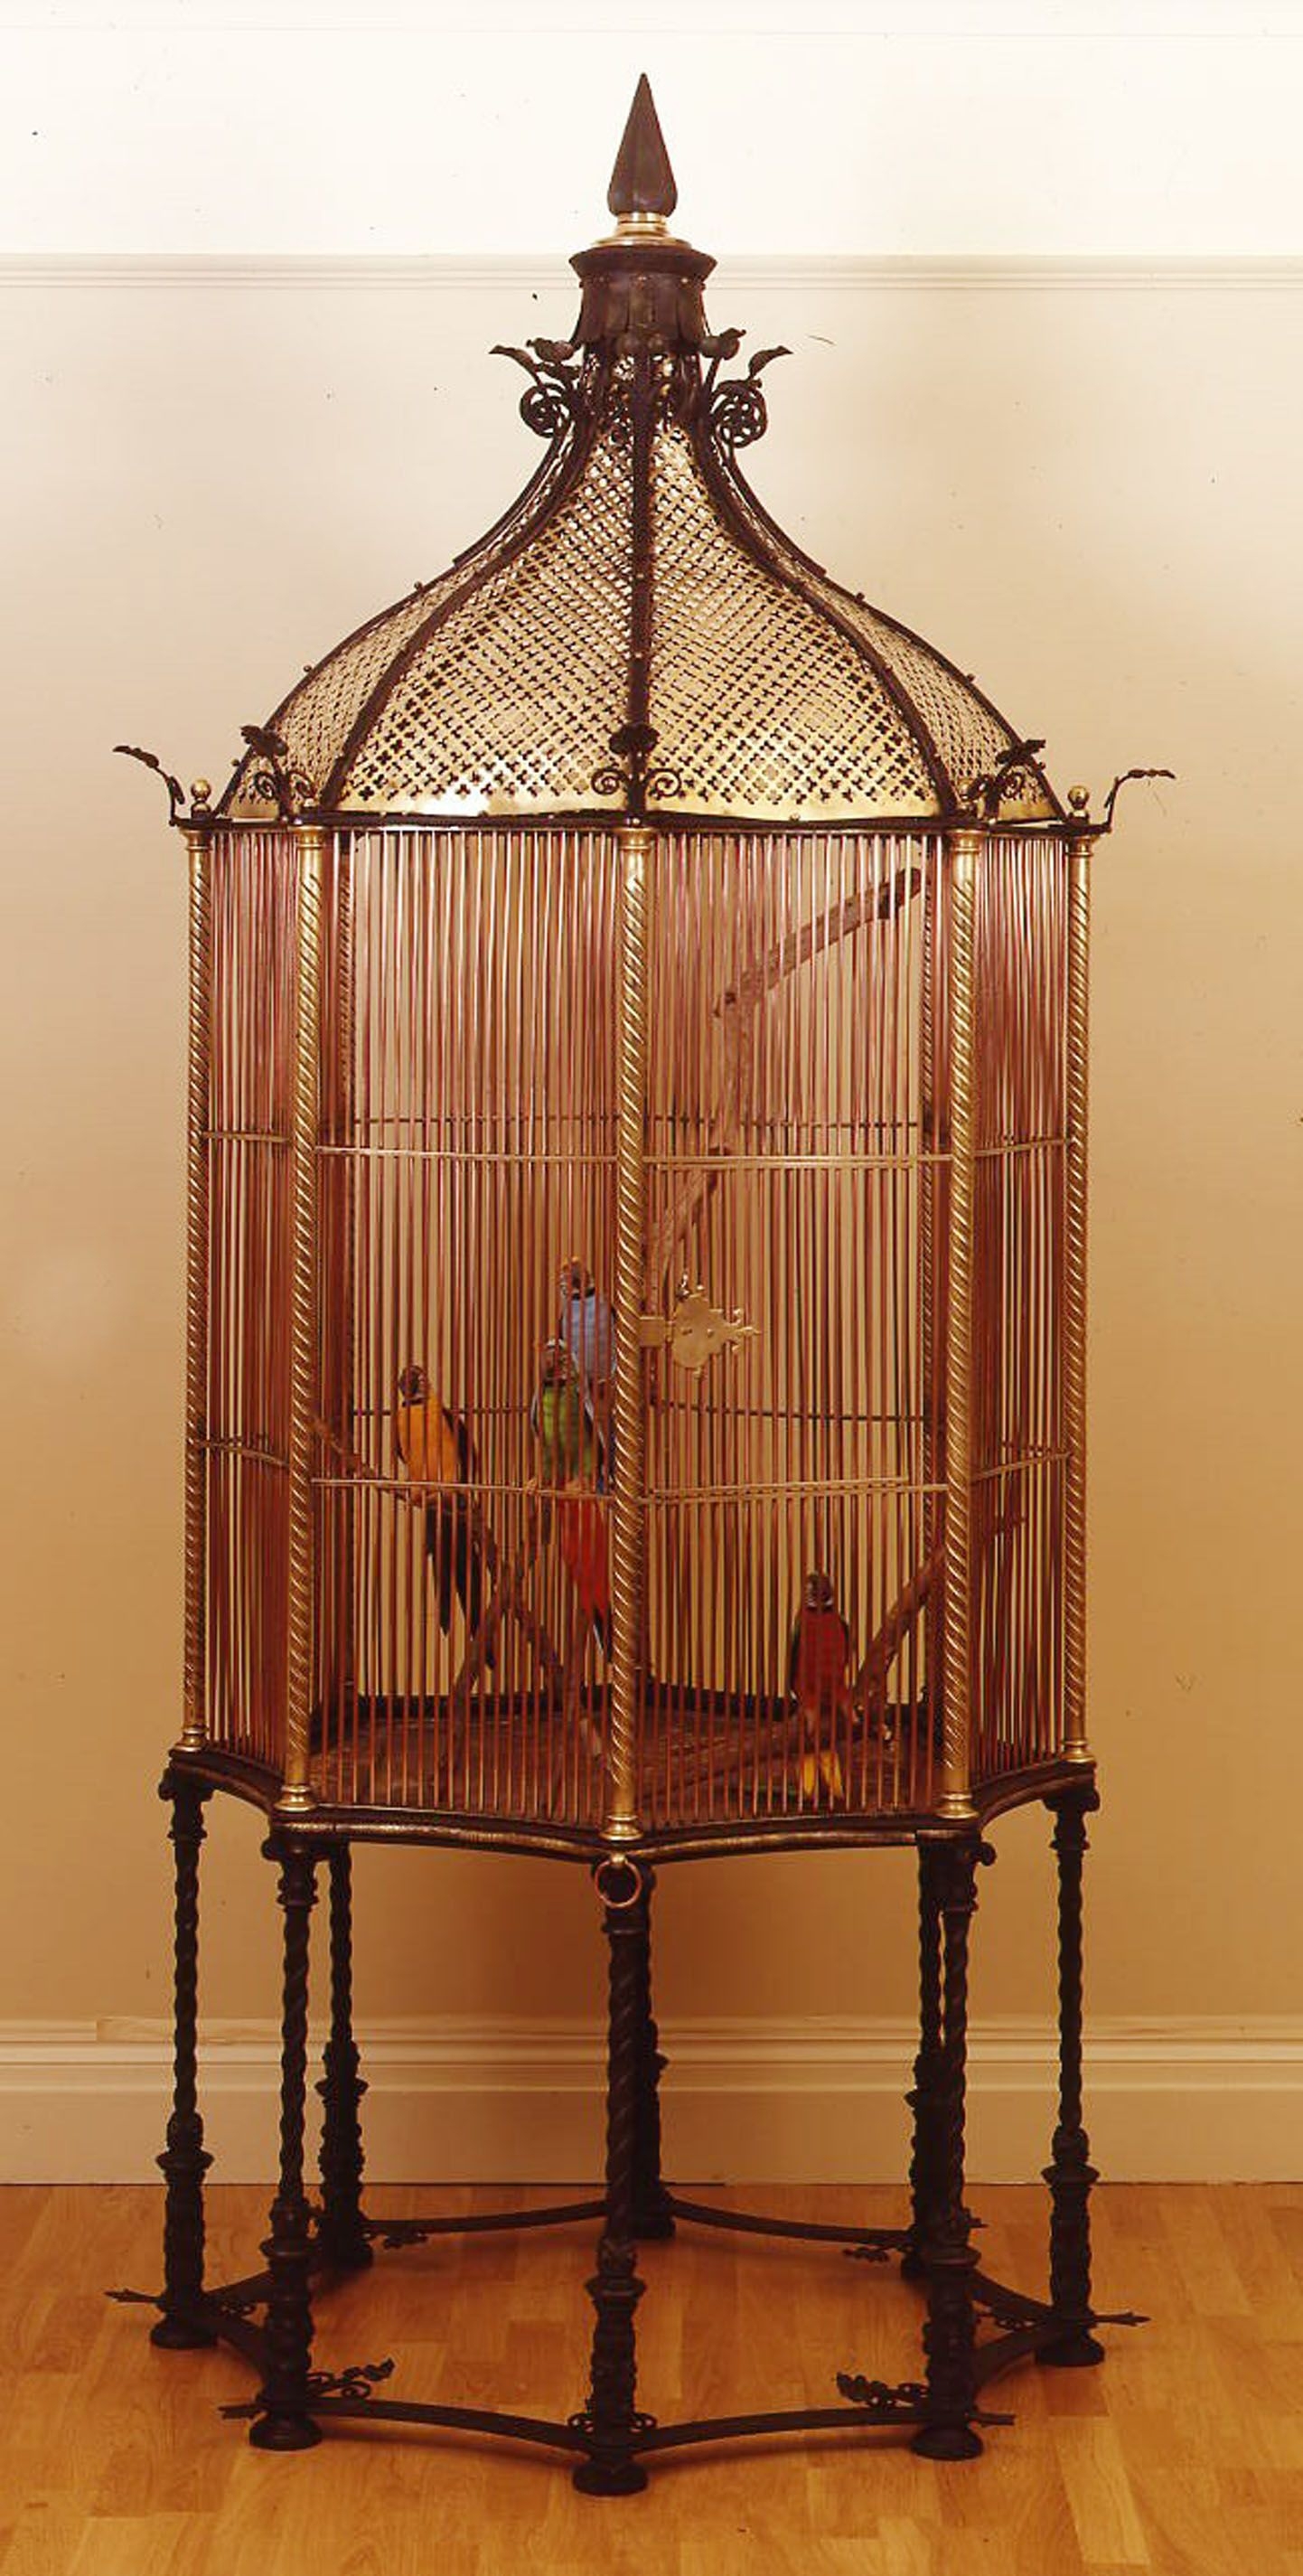 Antique bird cages